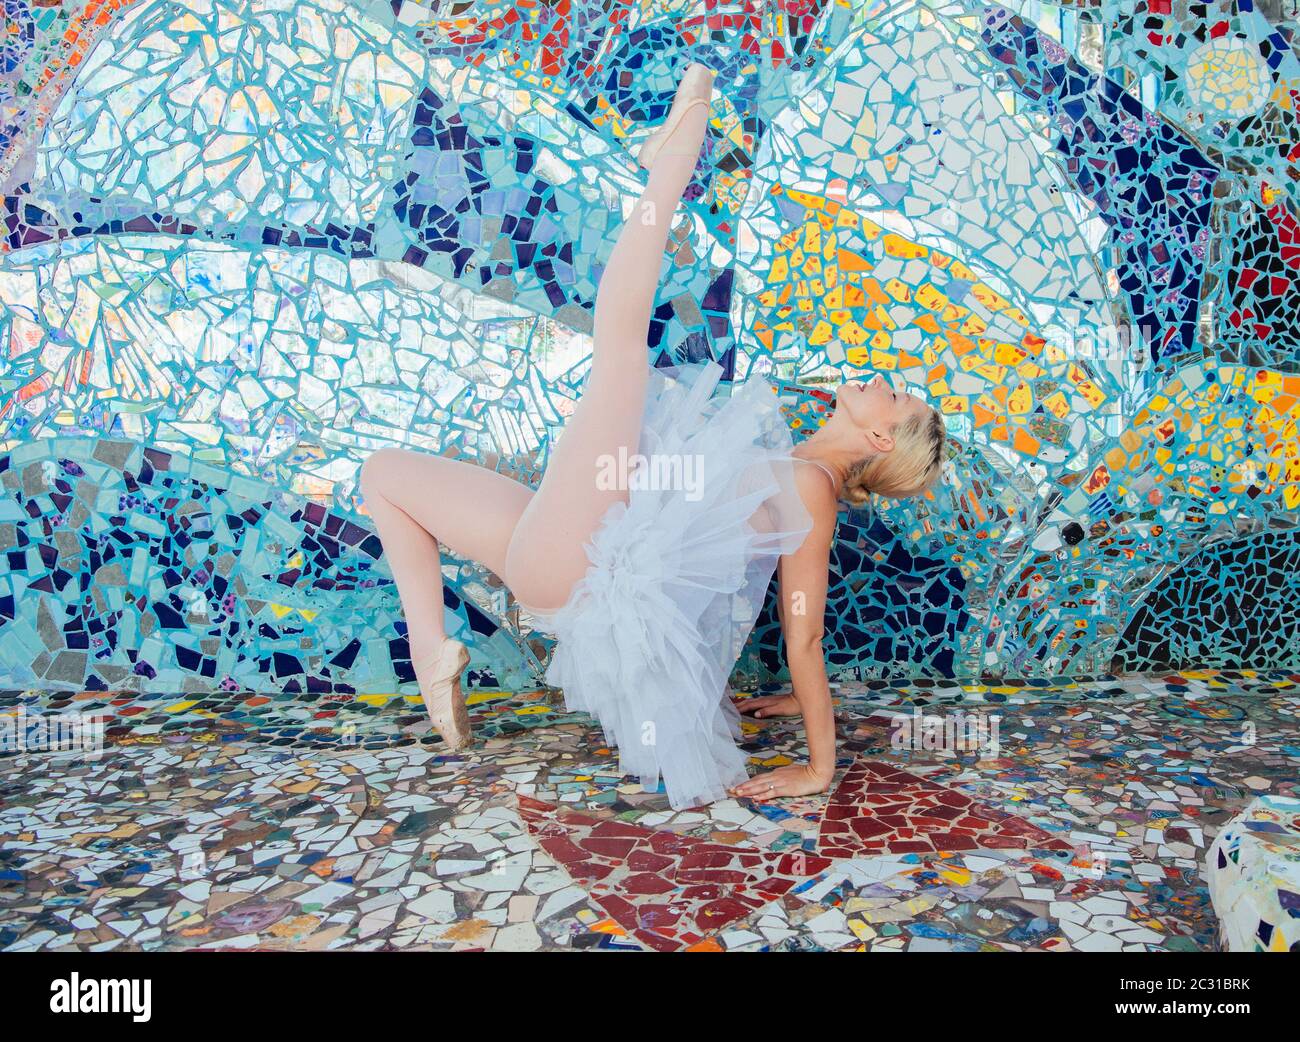 Ballet dancer, Mosaic Tile House, Venice, California, USA Stock Photo